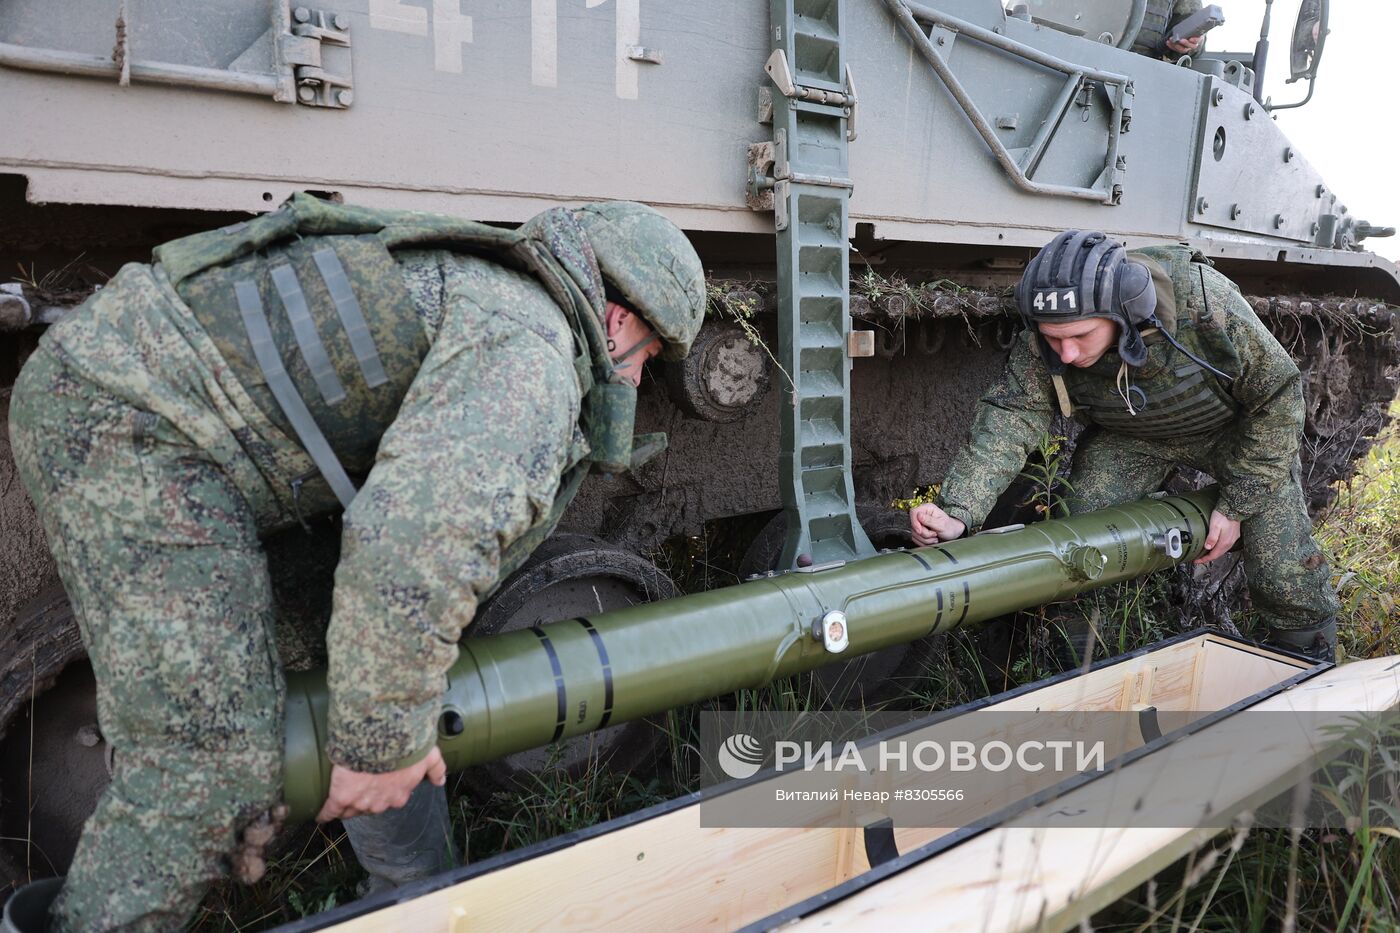 Обучение мобилизованных стрельбе из ПТРК "Хризантема" в Калининградской области